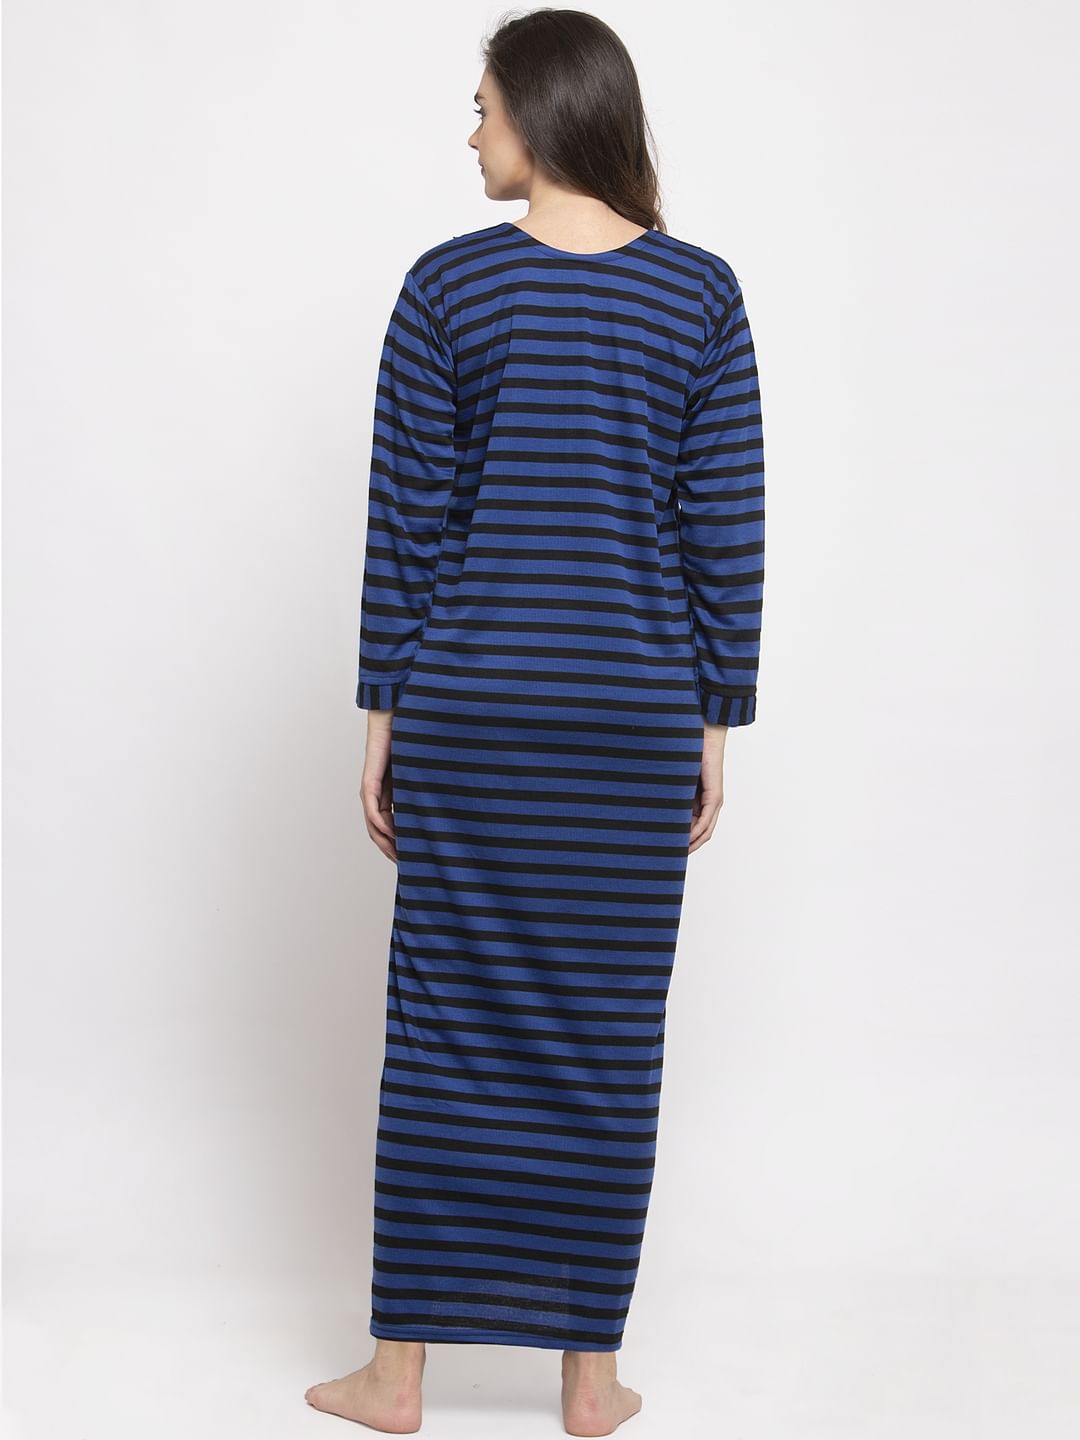 Blue Striped Woolen Maternity Nighty (Free Size)